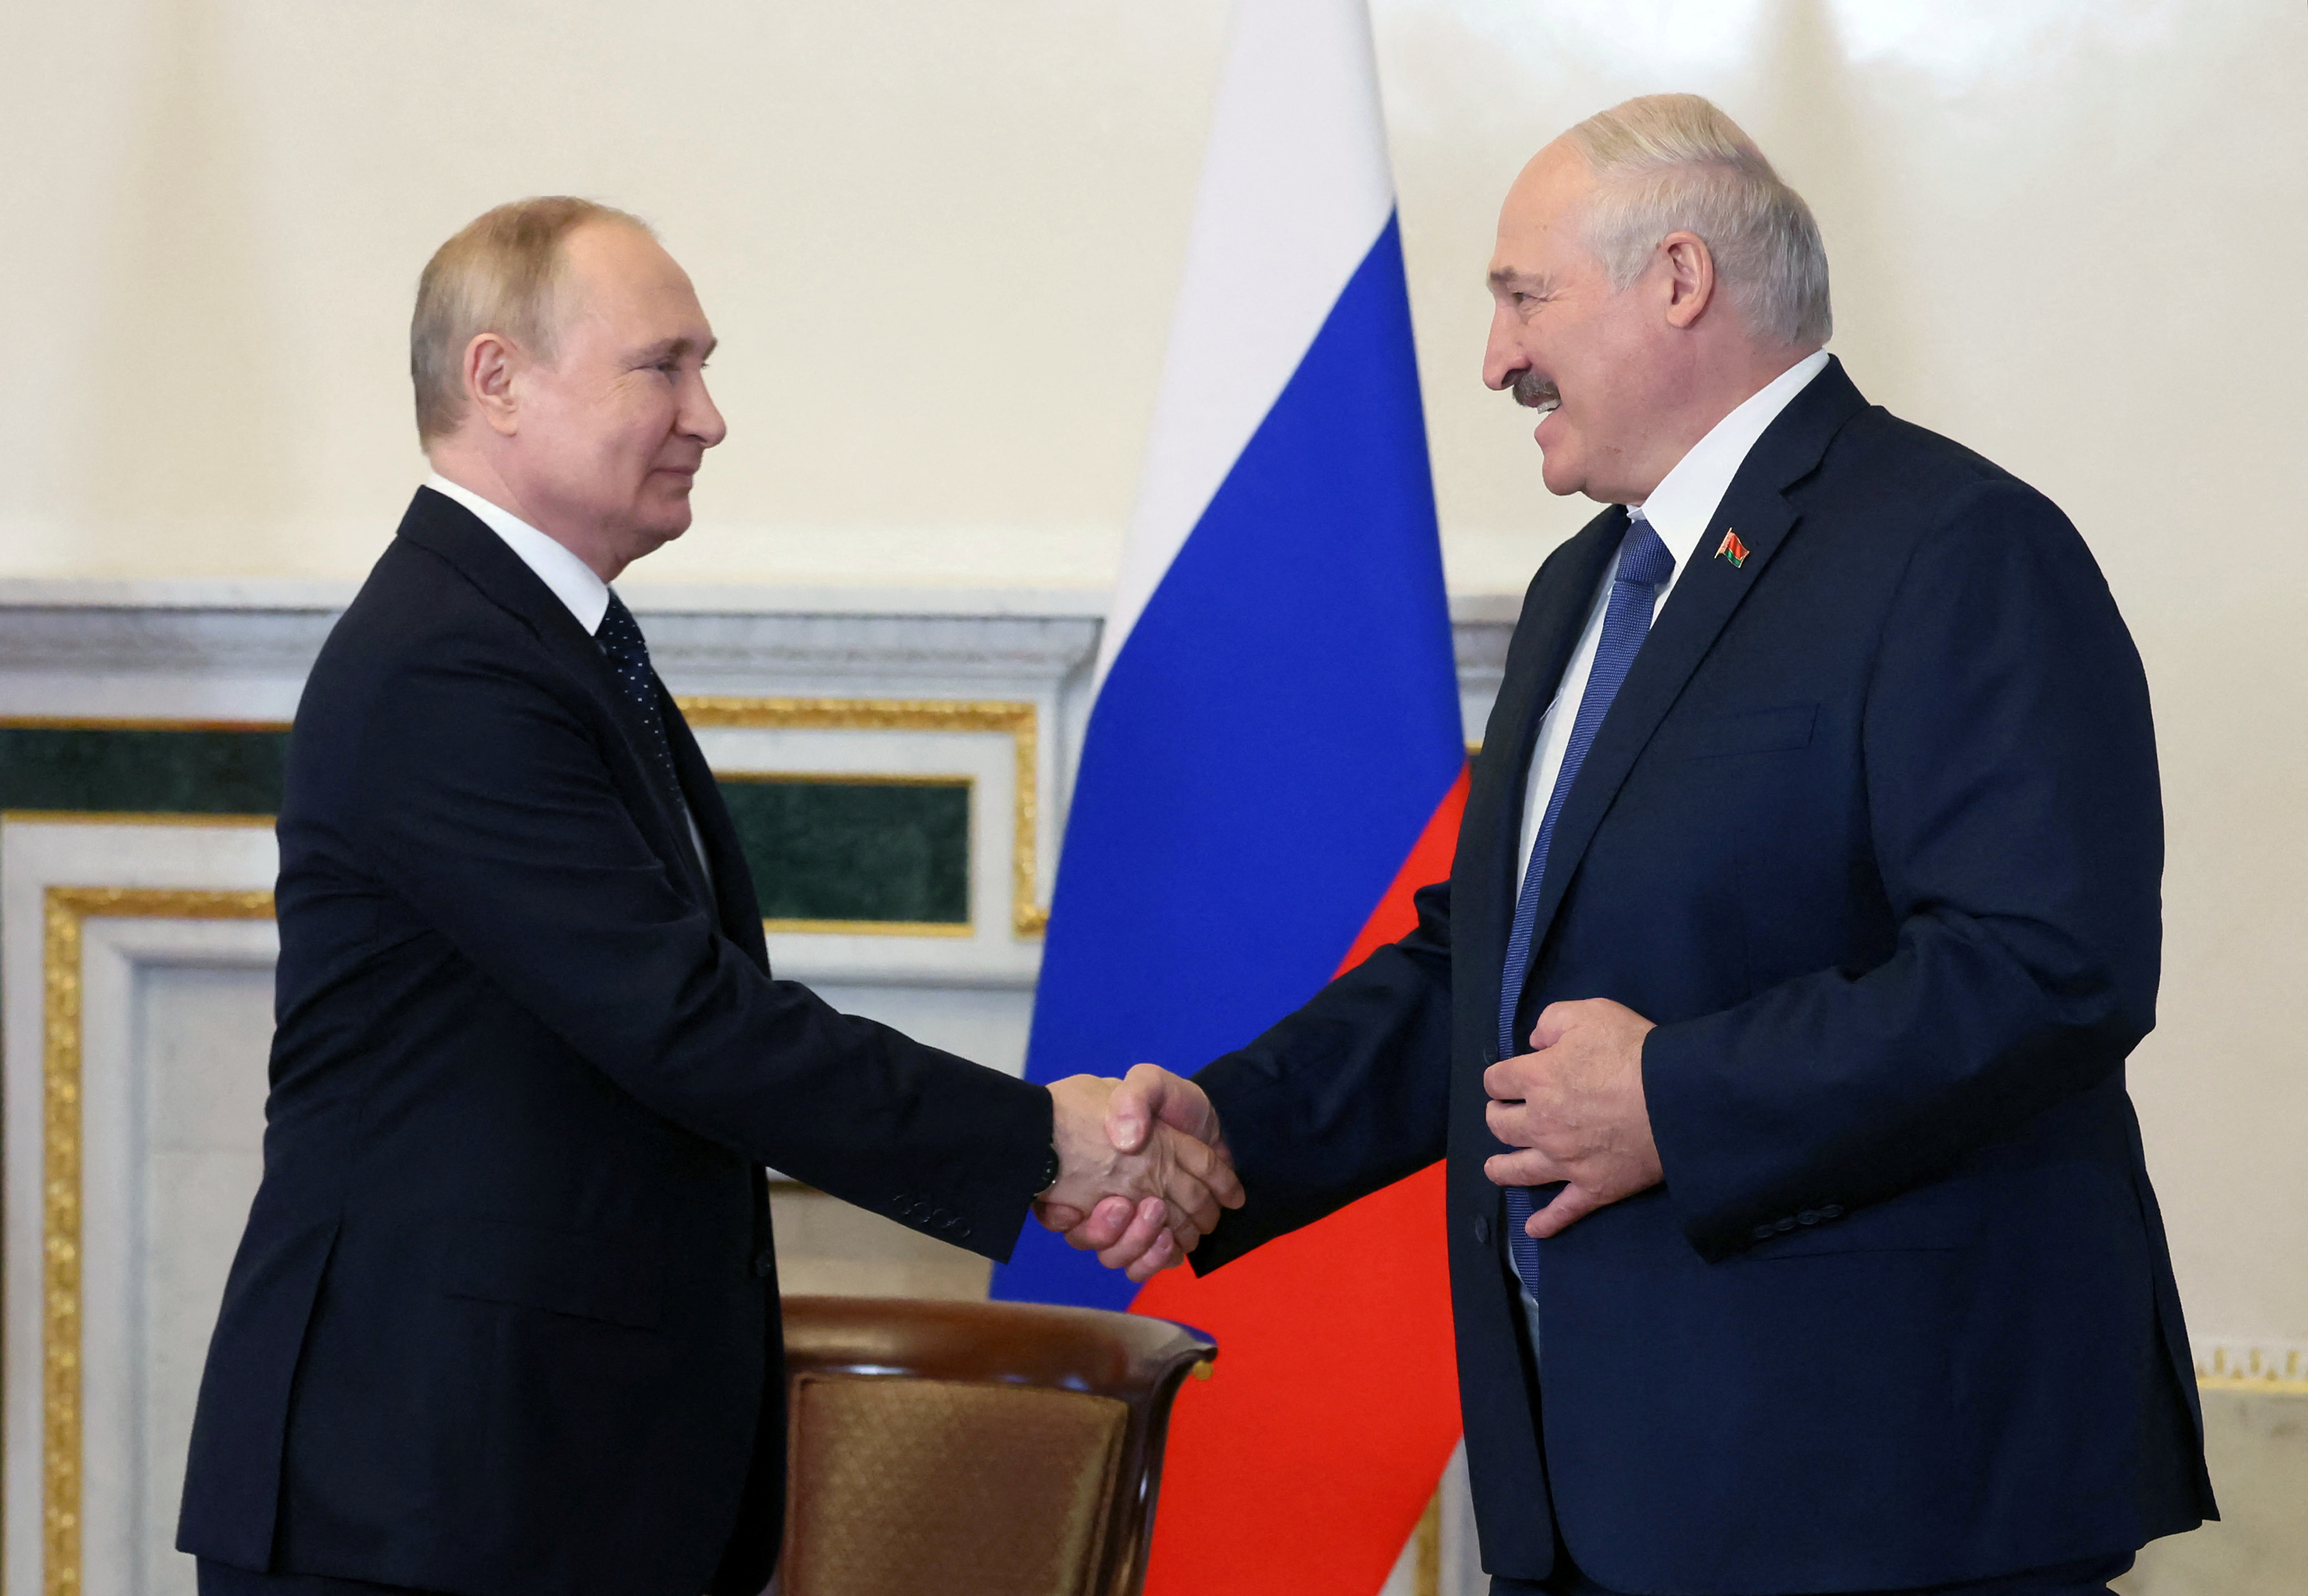 El dictador bielorruso Alexander Lukashenko es el principal aliado de Vladimir Putin en el contexto de la guerra rusa en Ucrania (Sputnik/Mikhail Metzel/Kremlin via REUTERS)